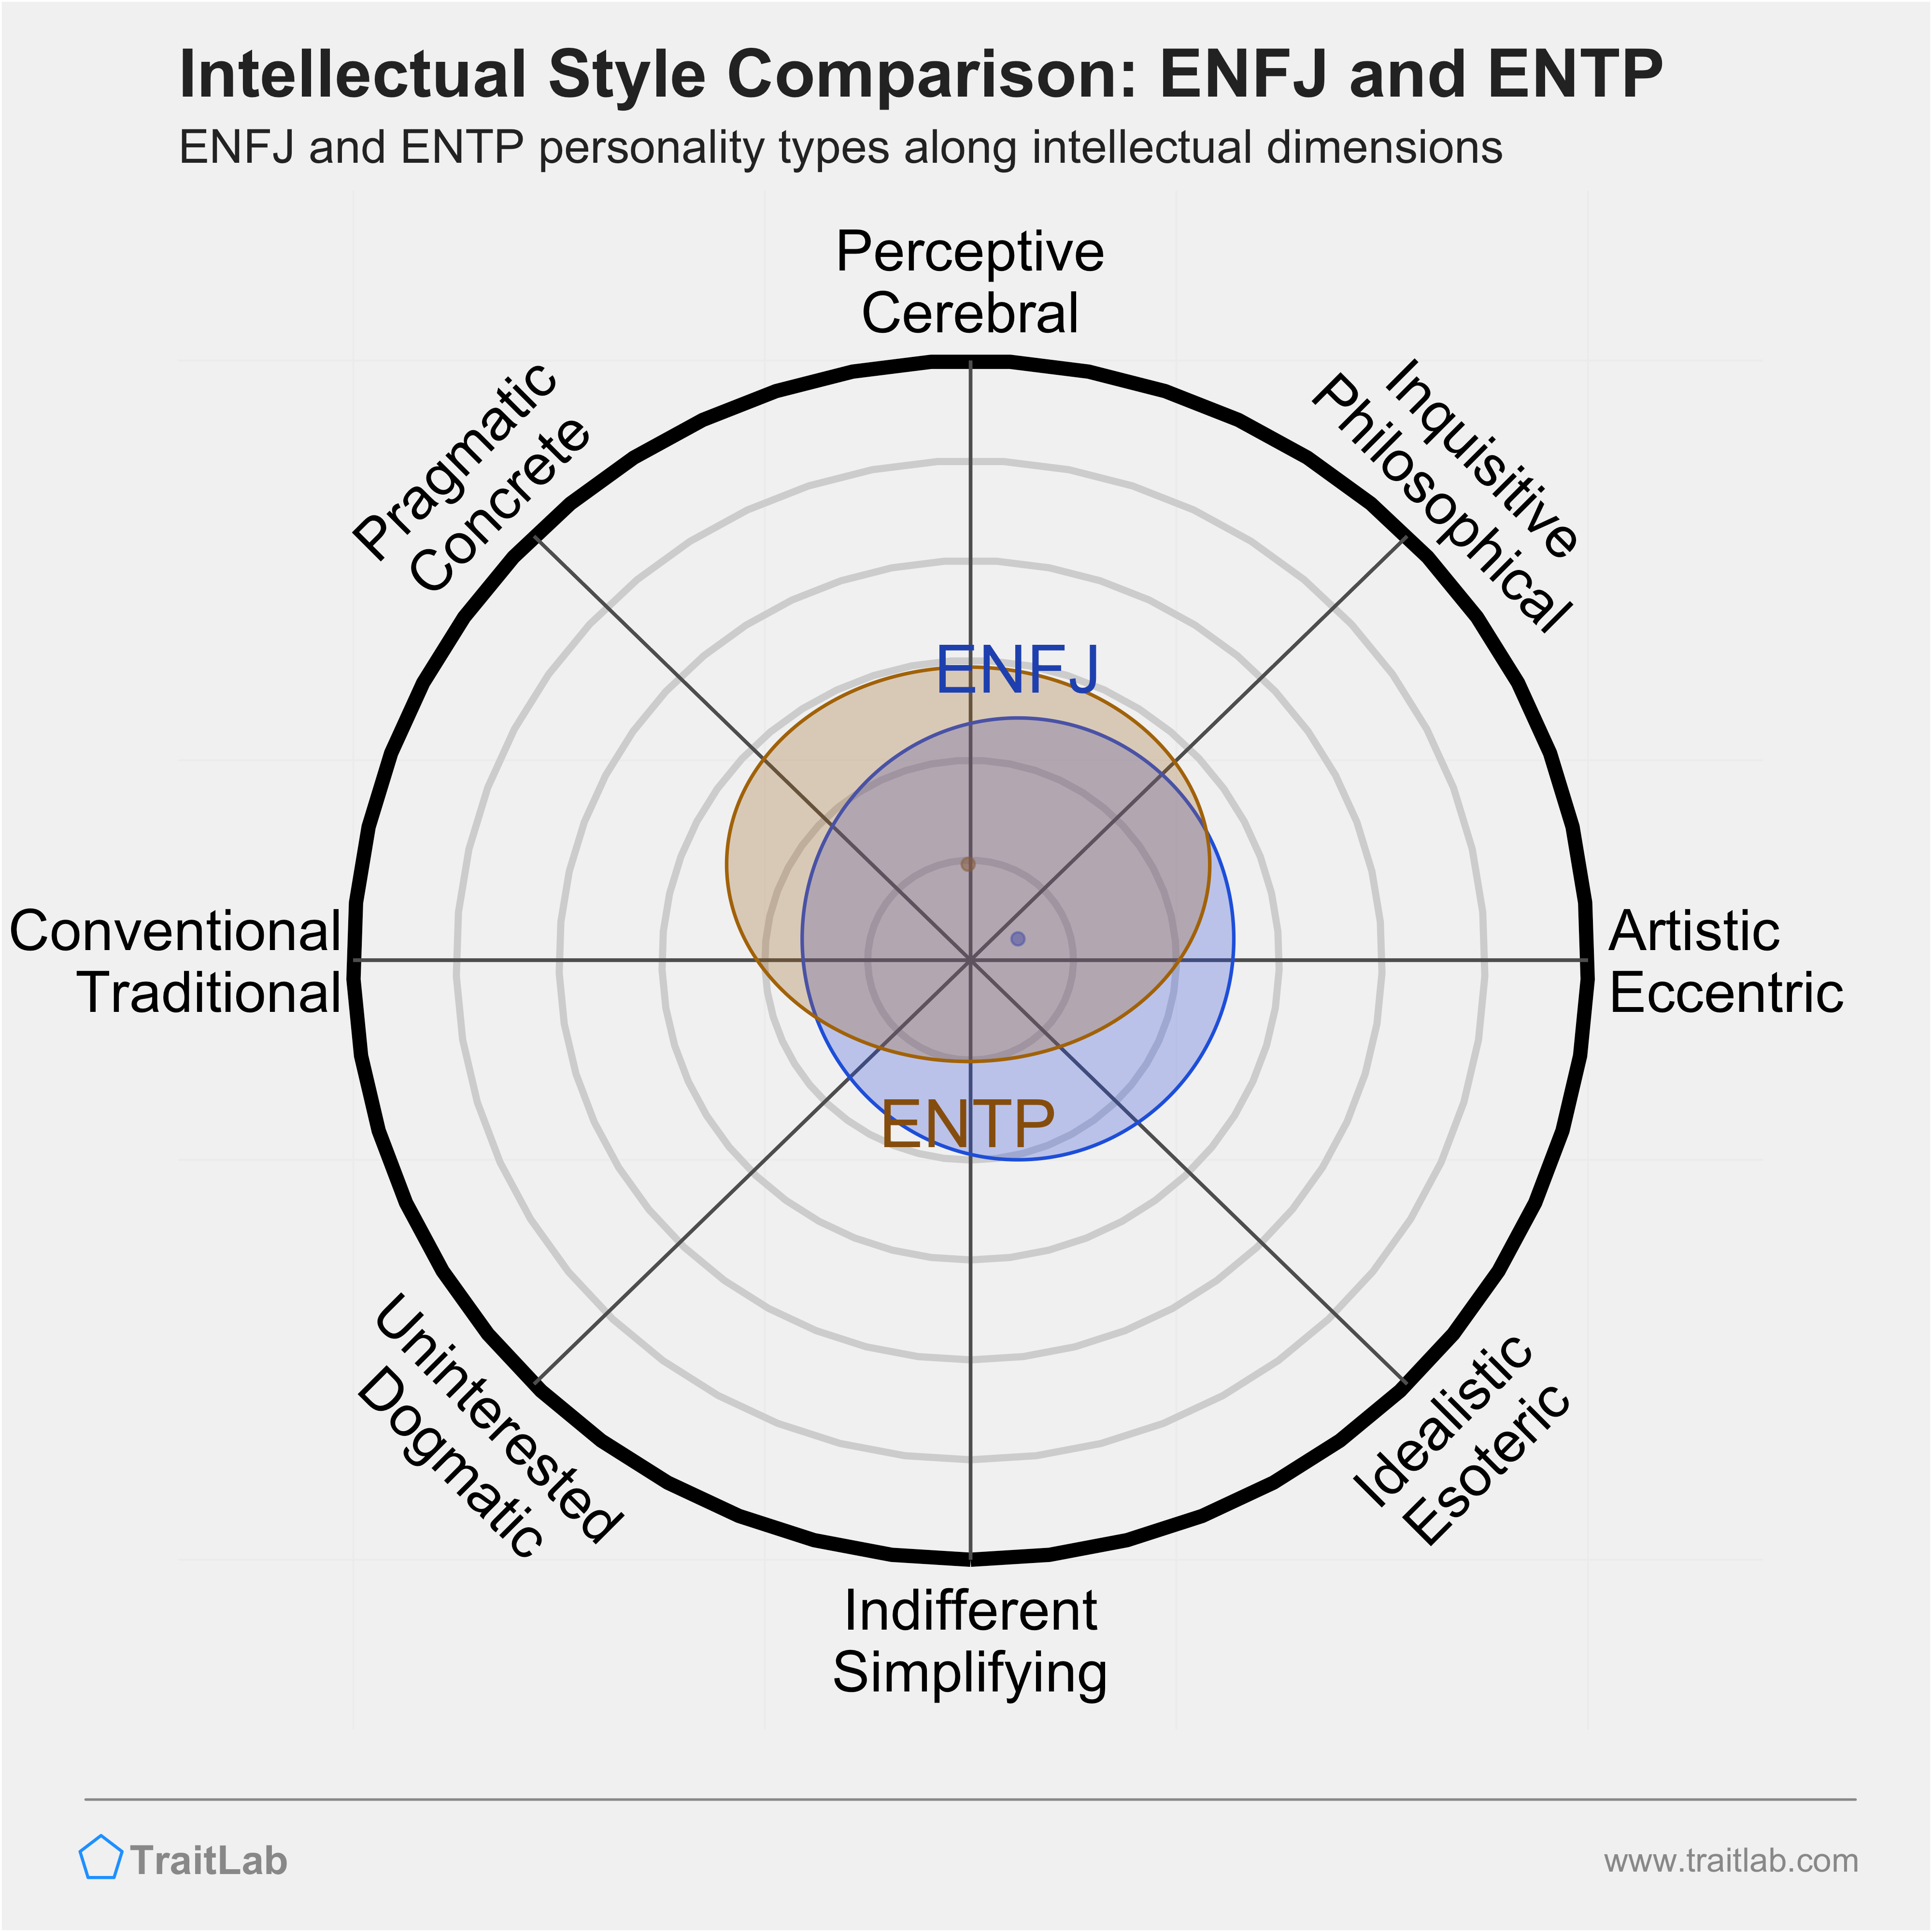 ENFJ and ENTP comparison across intellectual dimensions